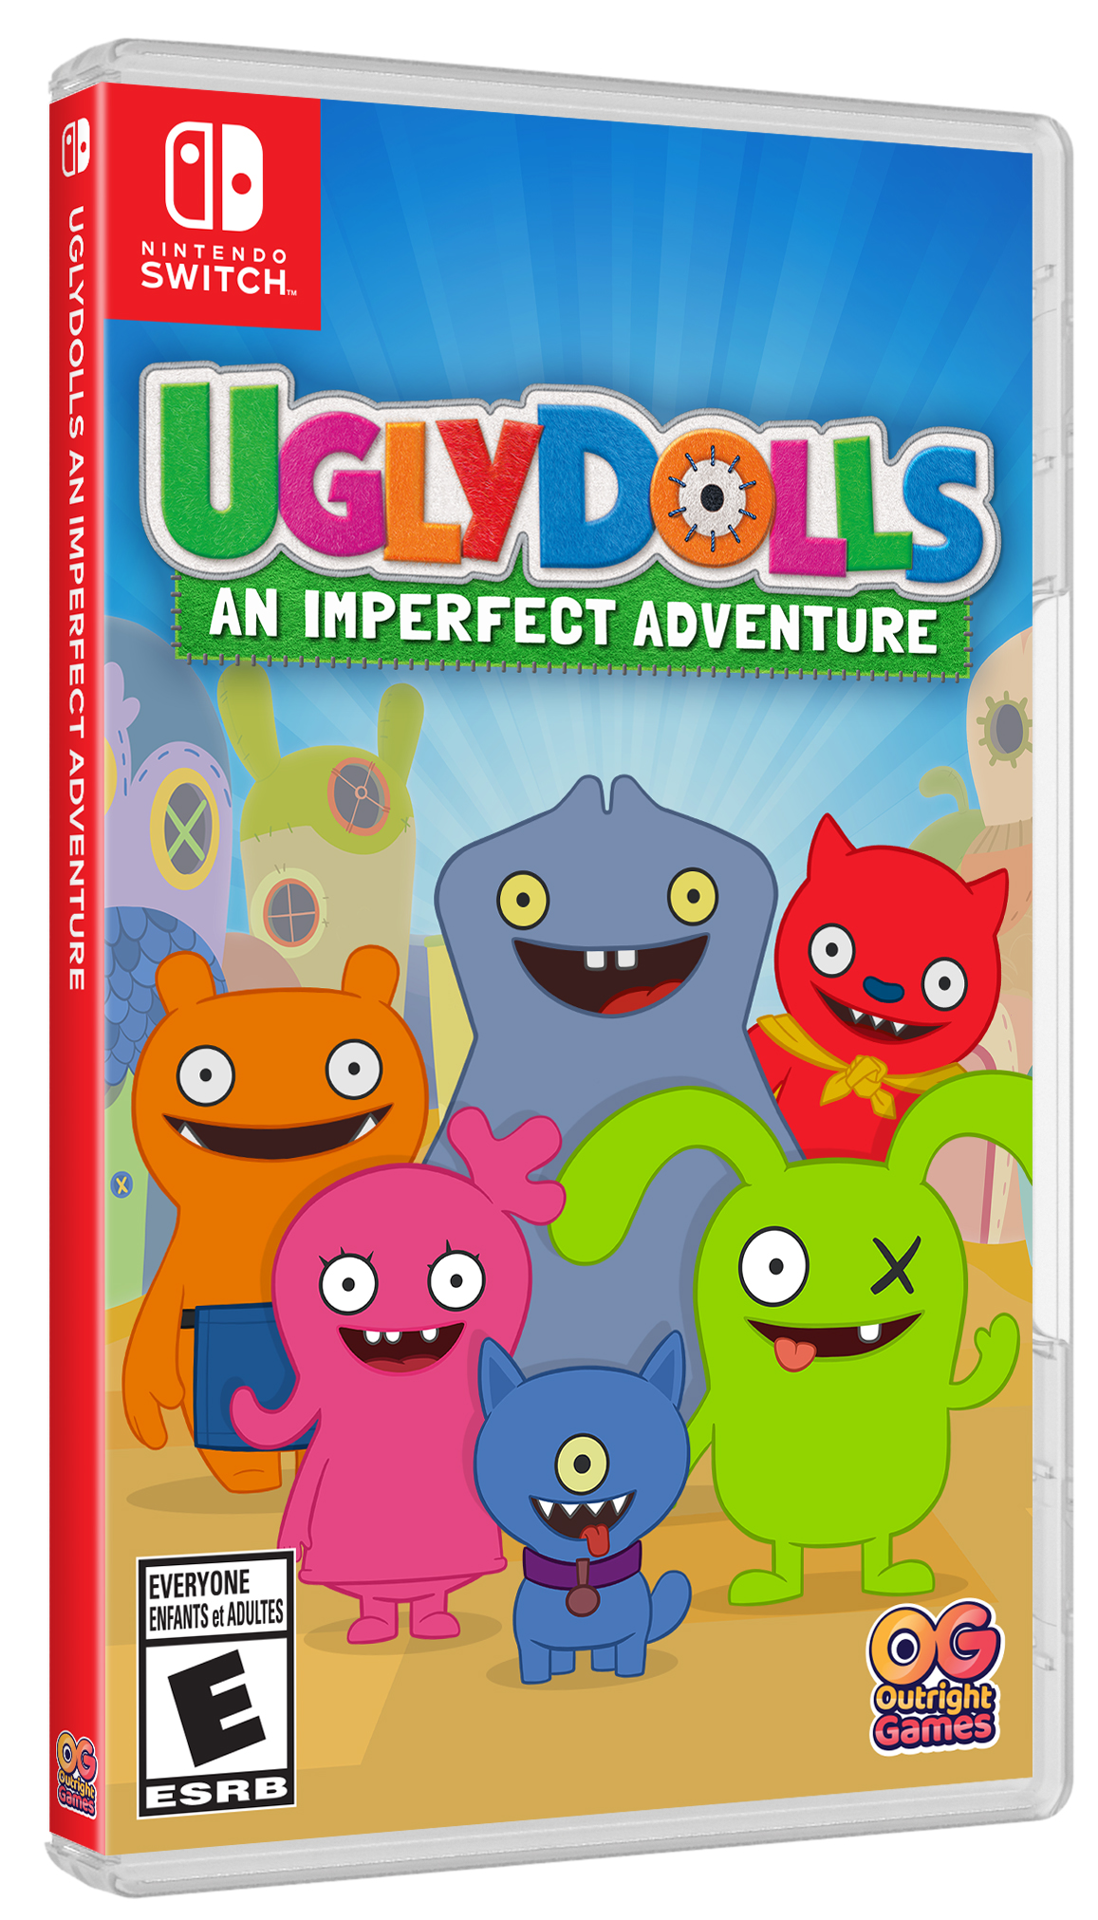 UglyDolls - Une aventure imparfaite